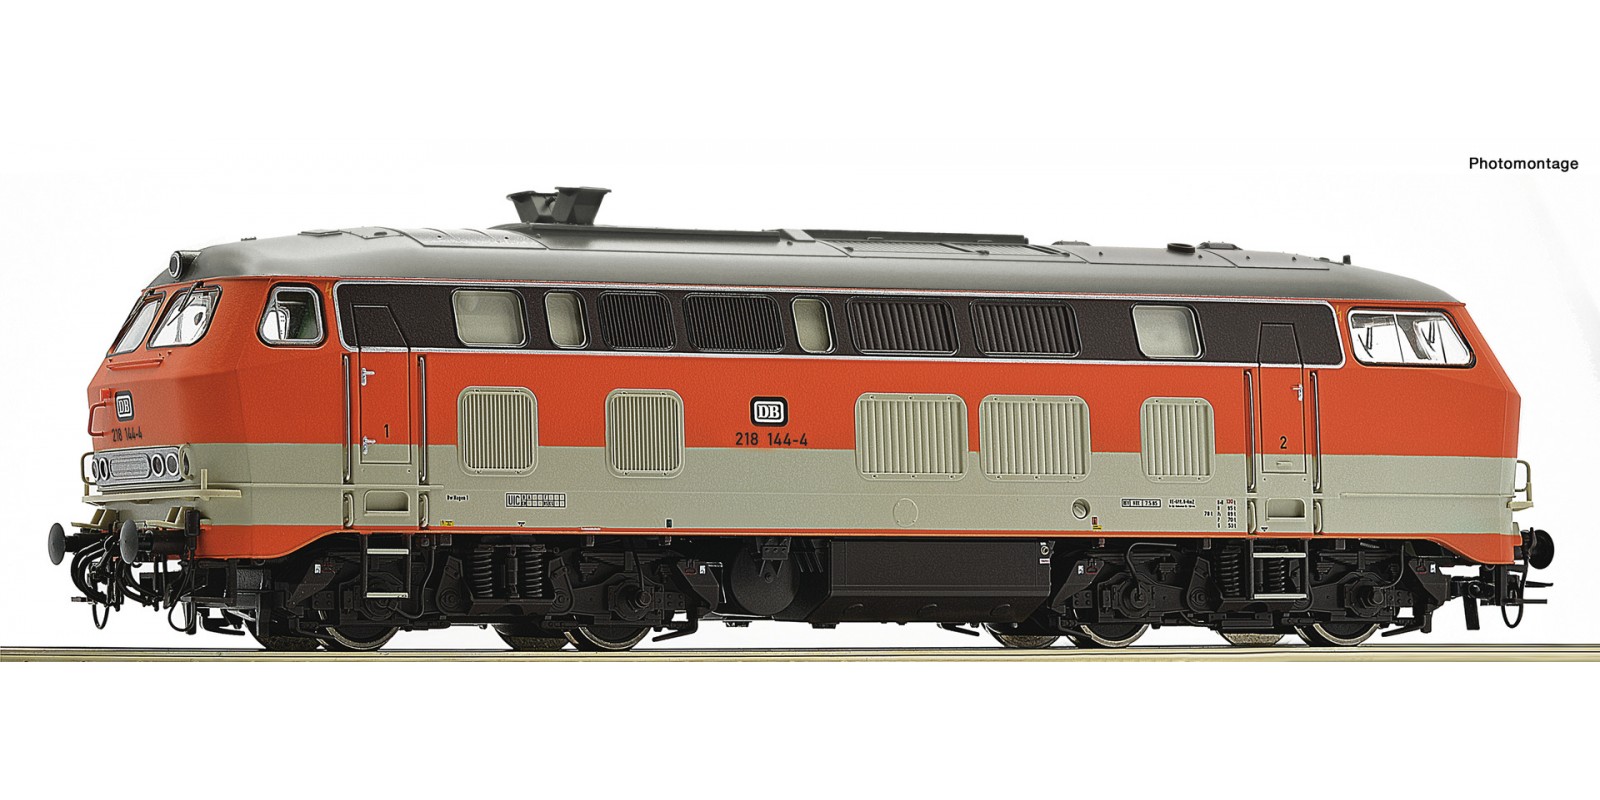 RO78749 Diesel locomotive 218 144-4